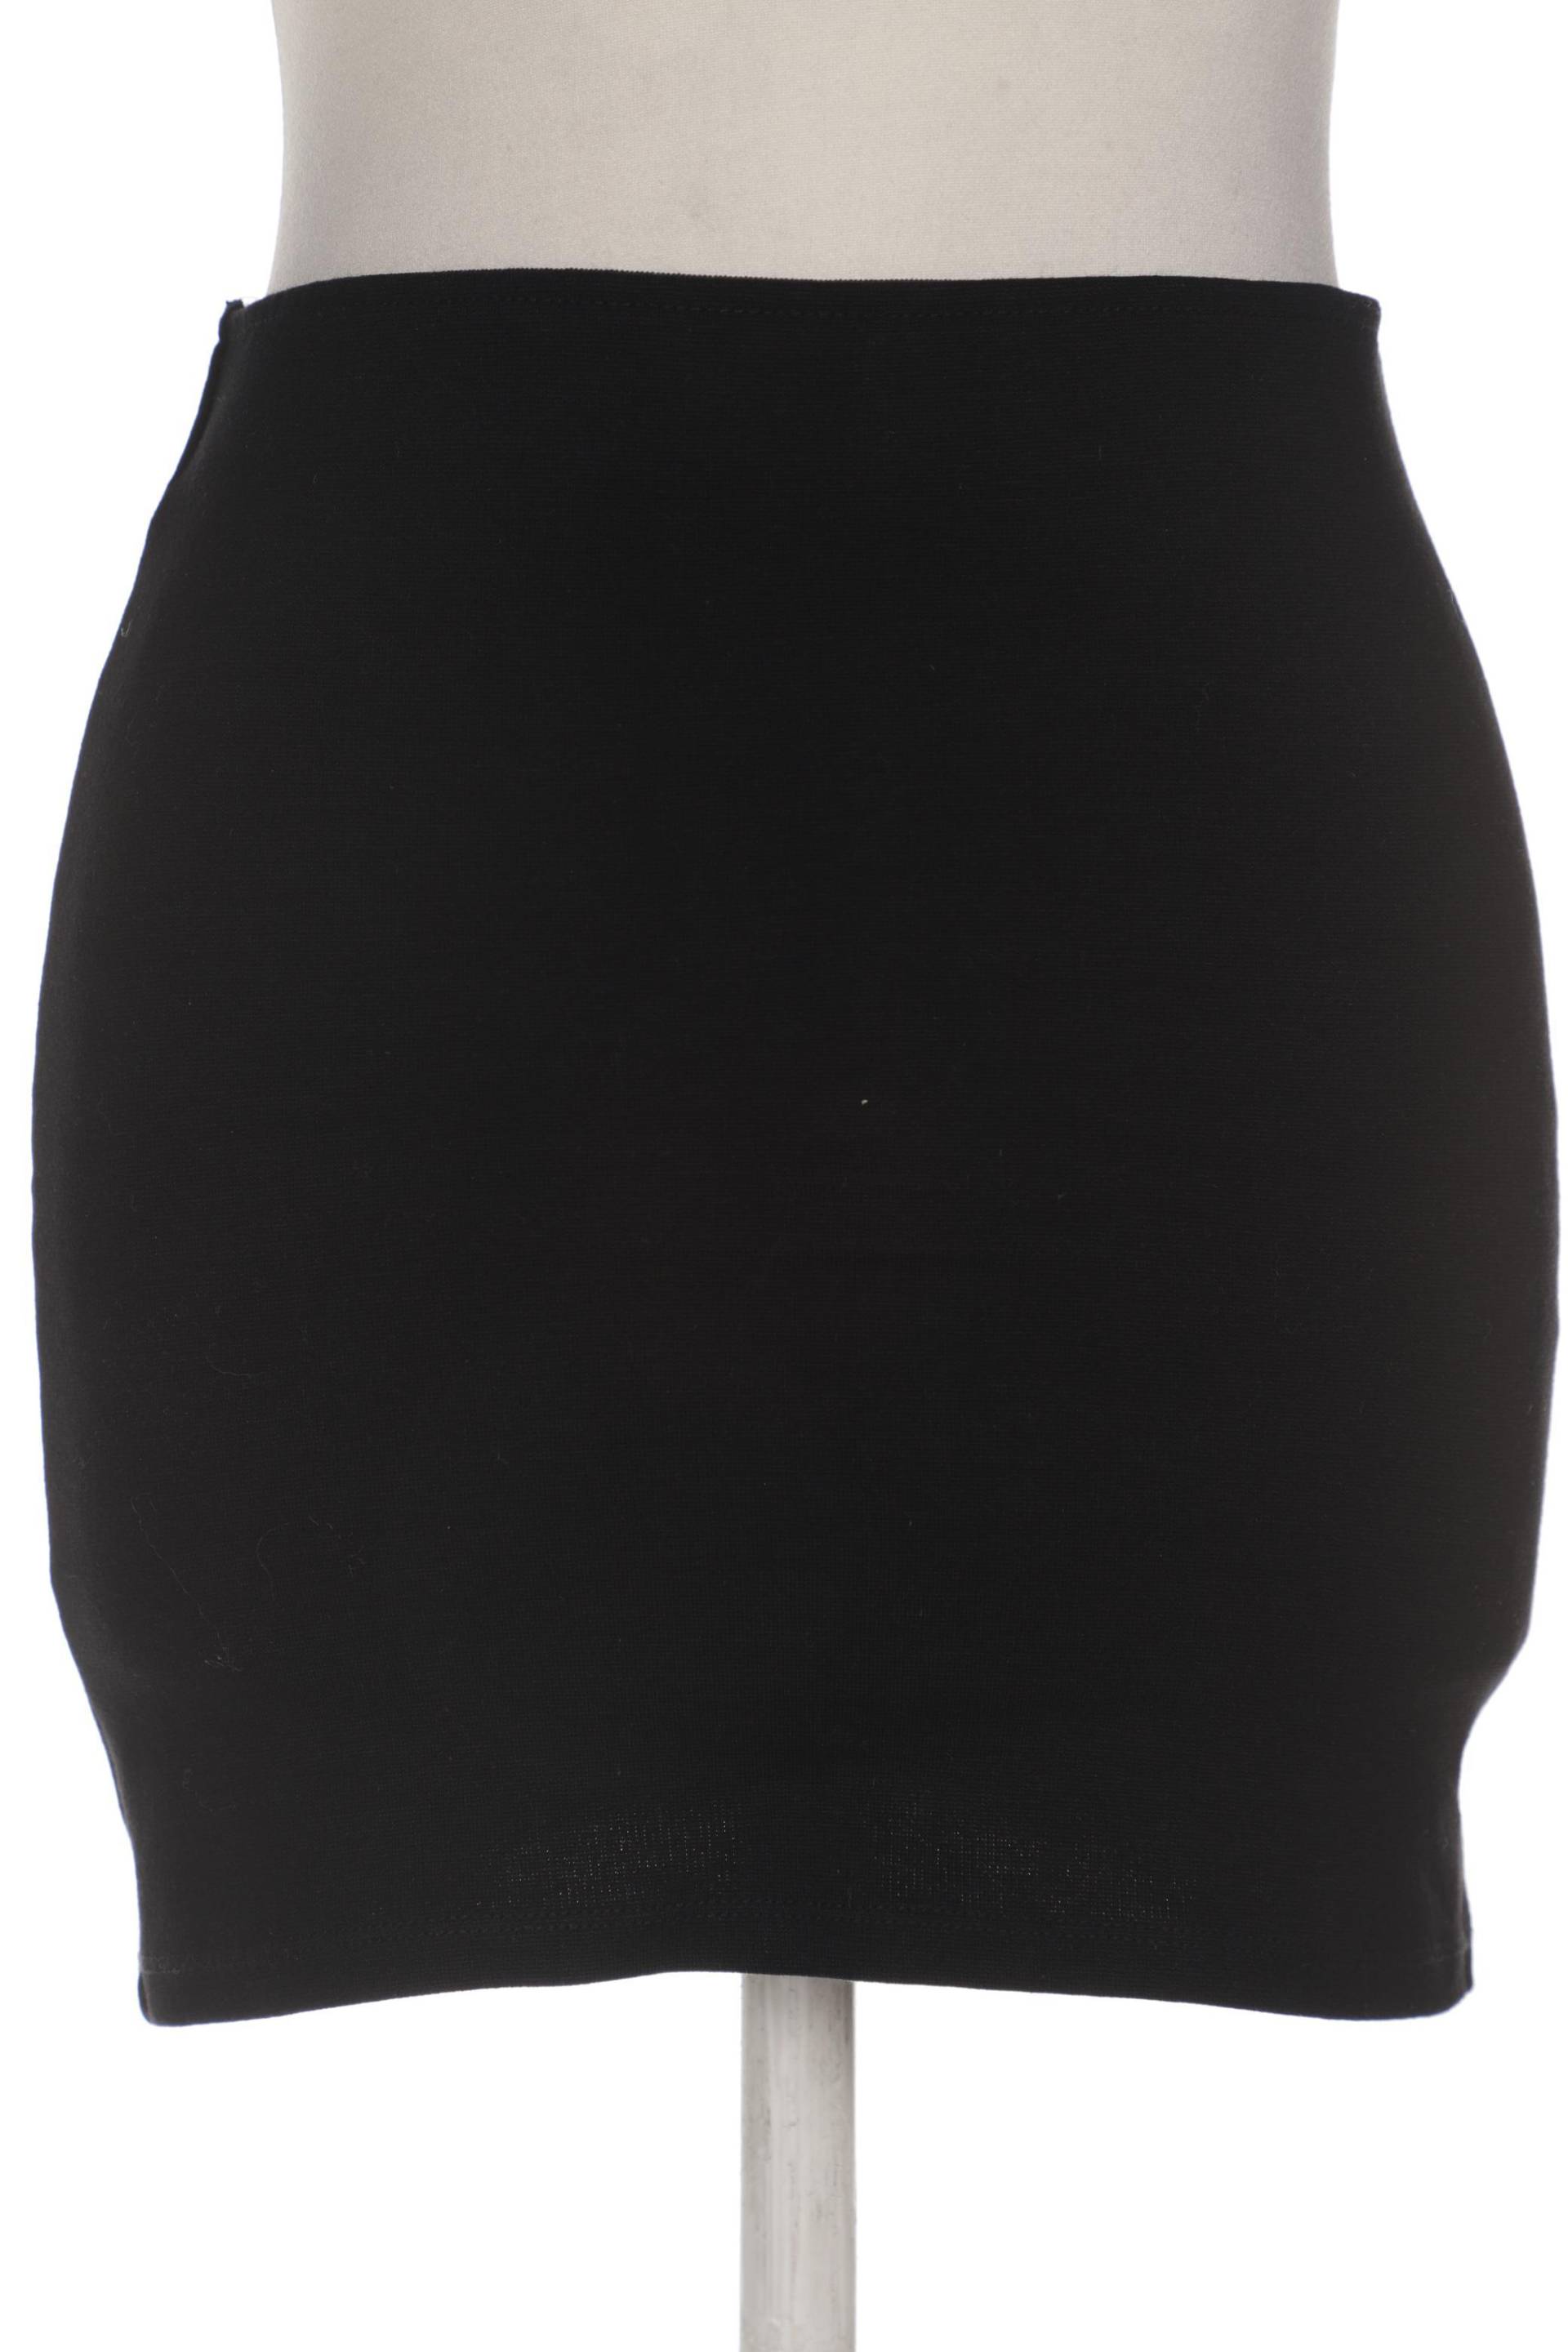 Zara Damen Rock, schwarz, Gr. 36 von ZARA